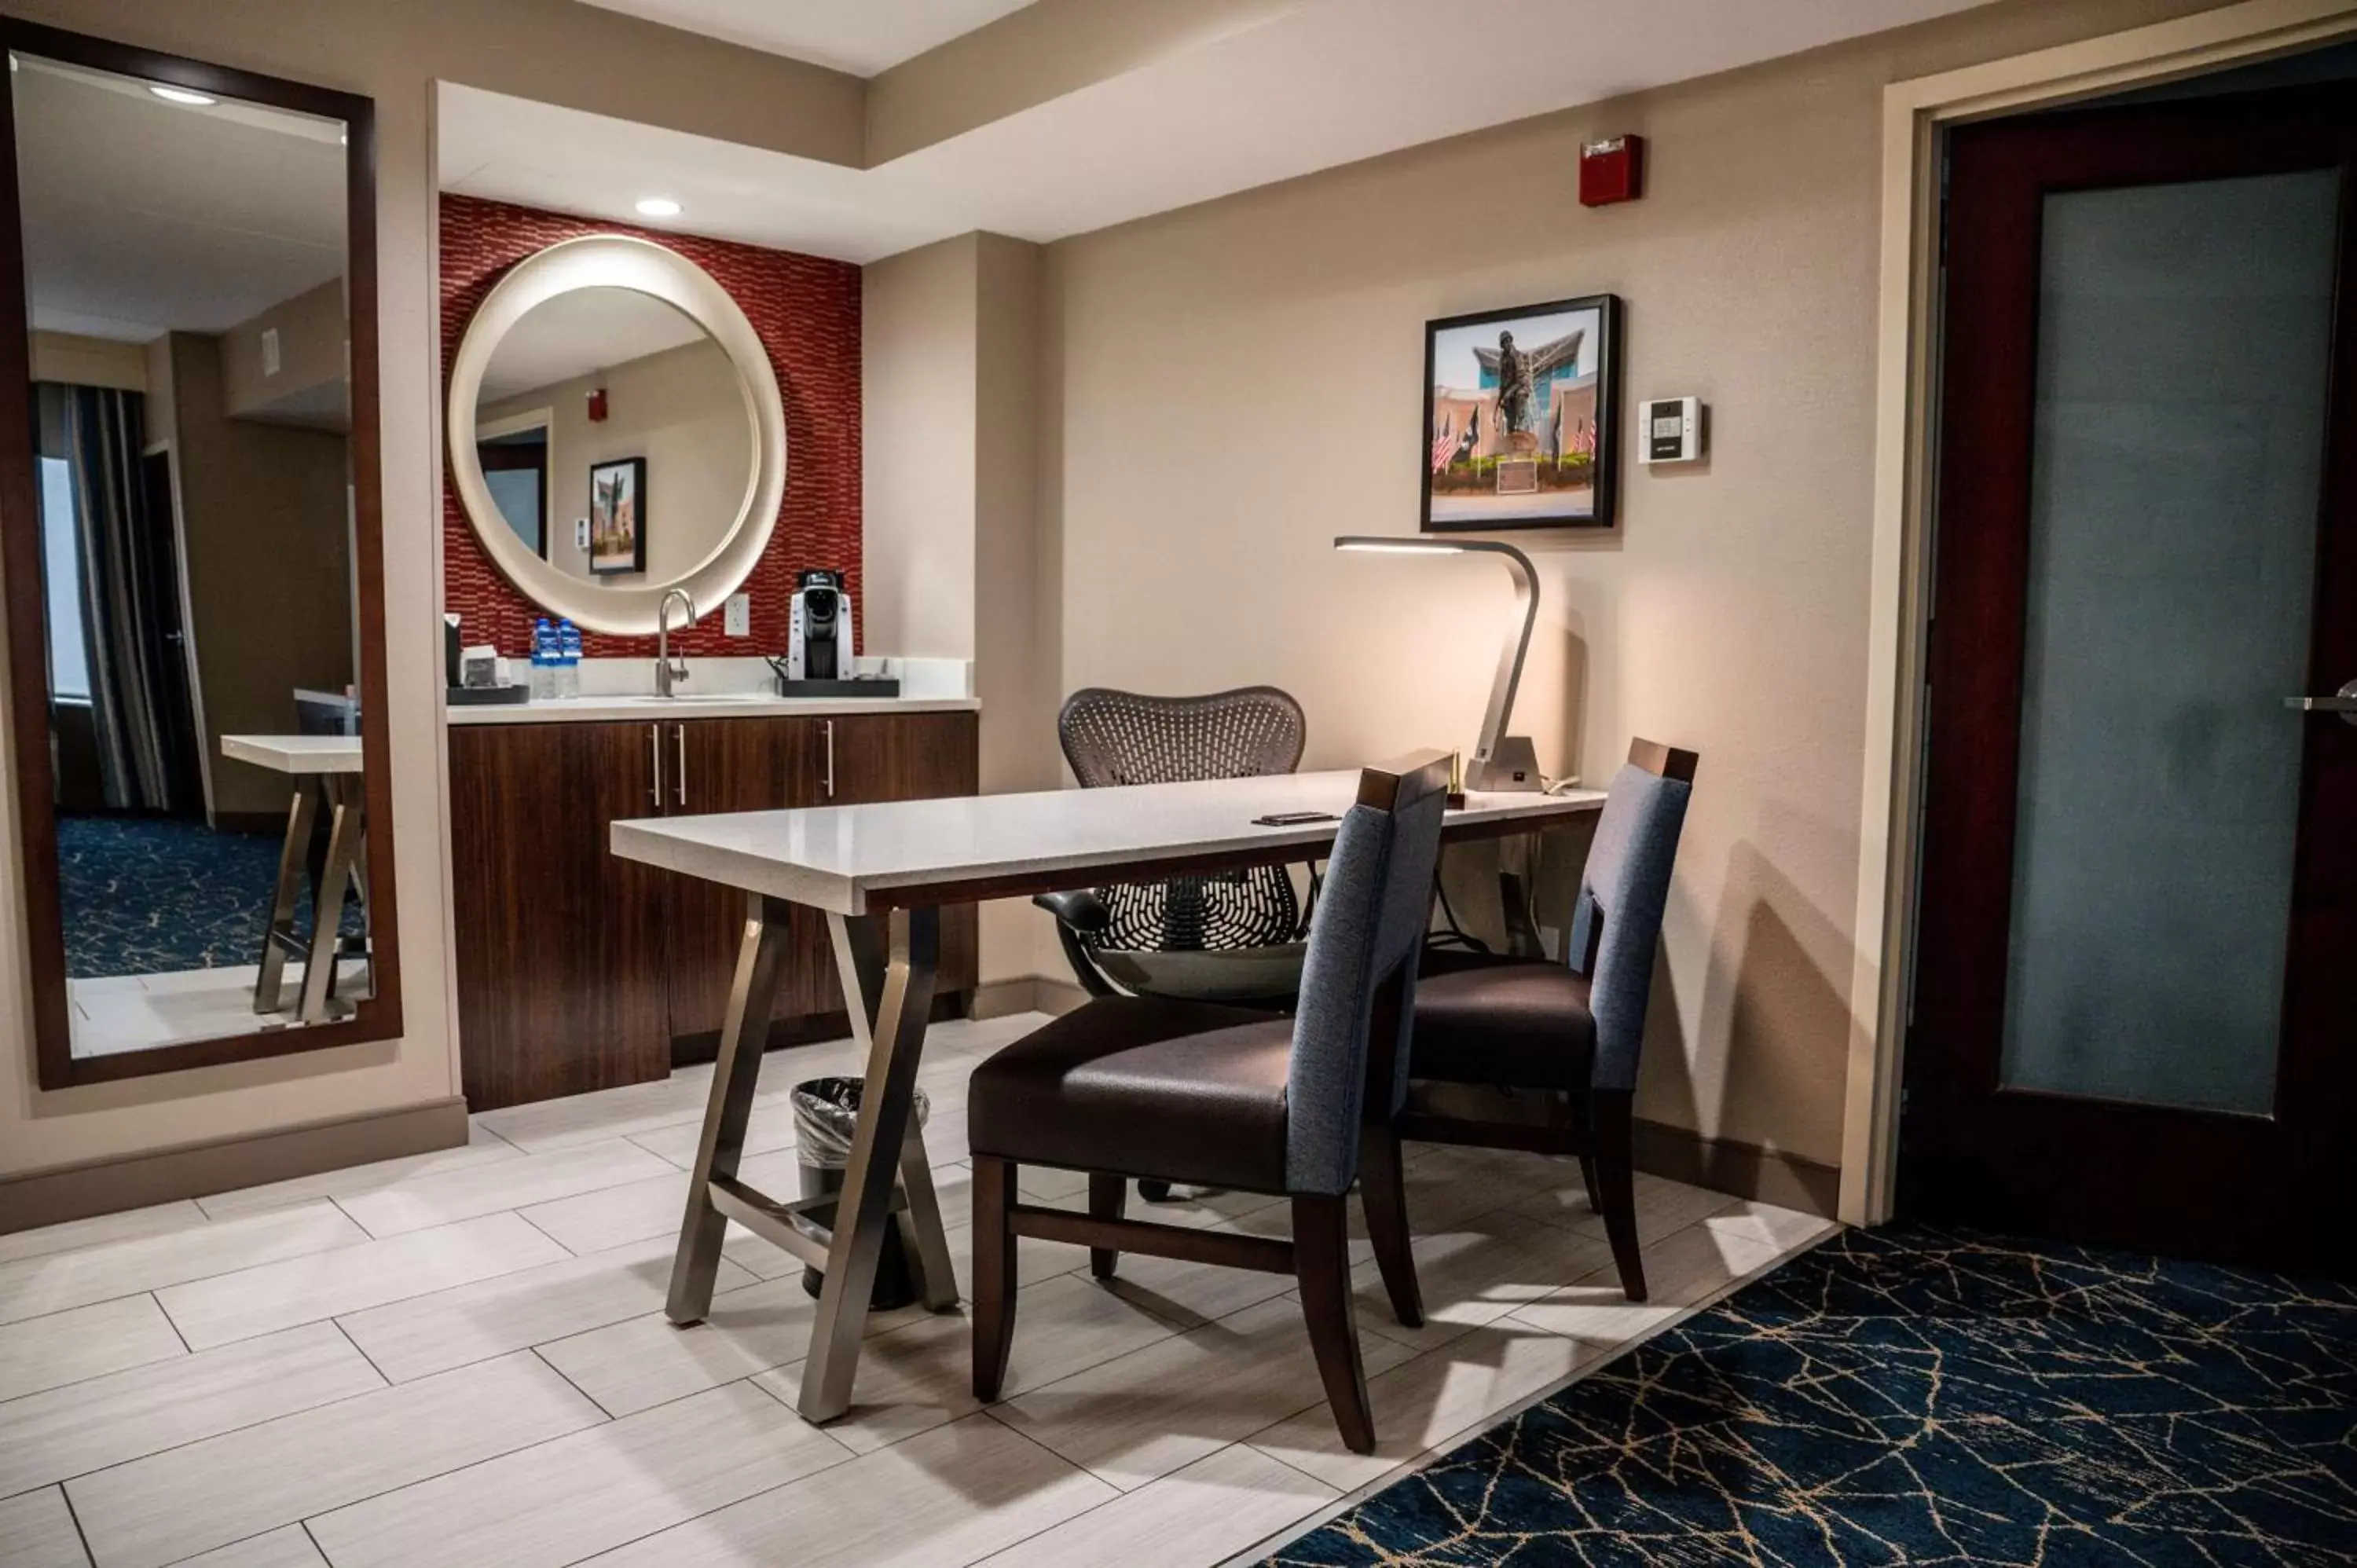 Bedroom, Dining Area in Hilton Garden Inn Fayetteville/Fort Bragg